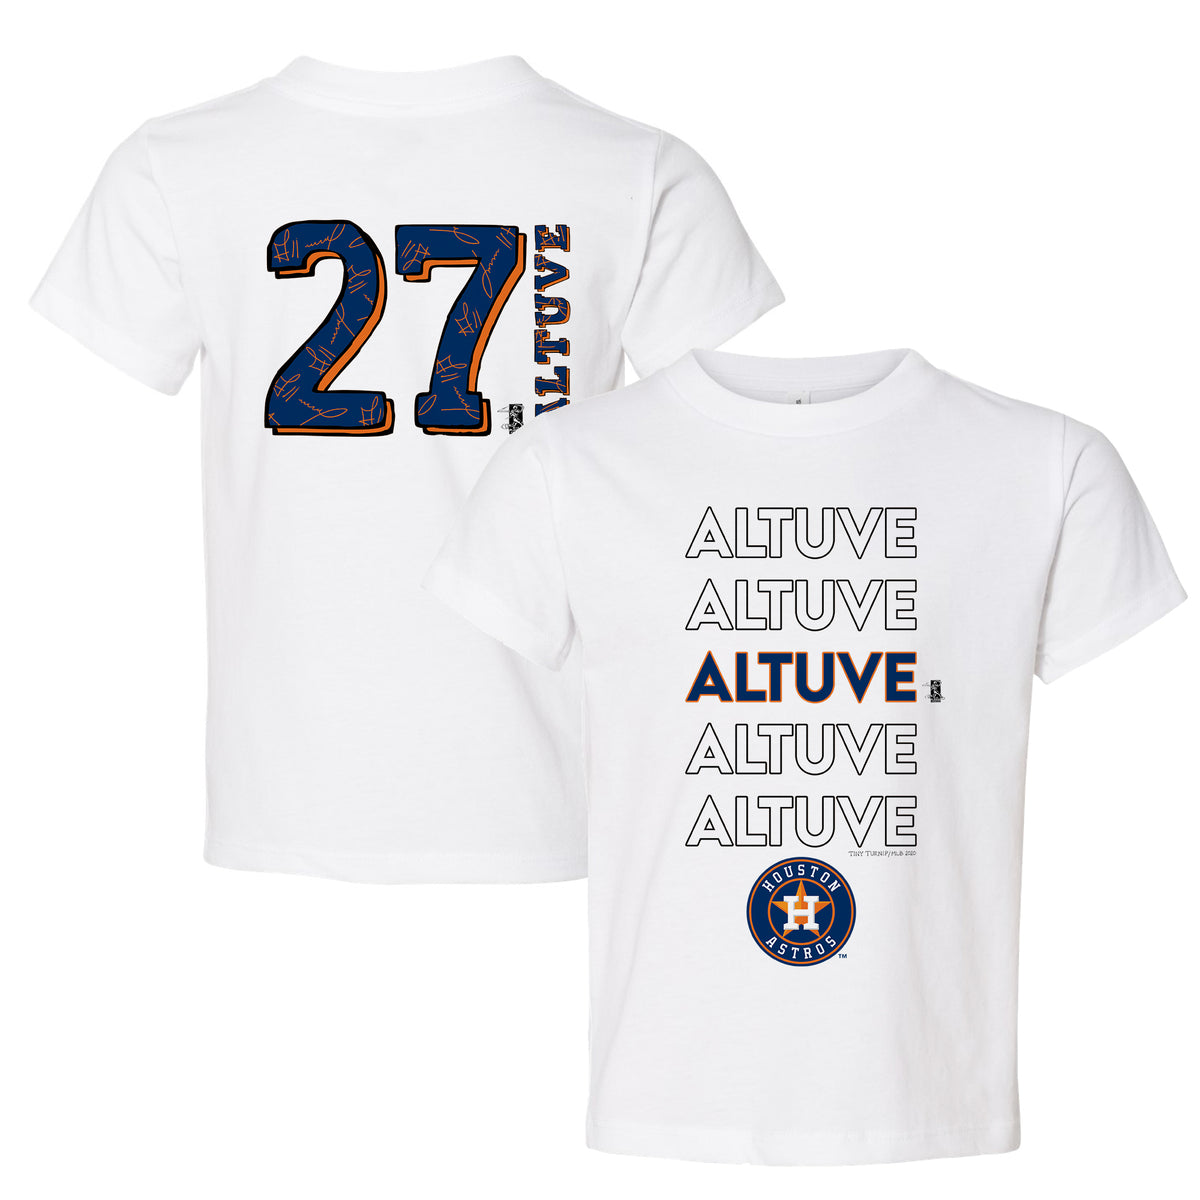 Jose Altuve Jerseys, Jose Altuve Shirt, Jose Altuve Gear & Merchandise